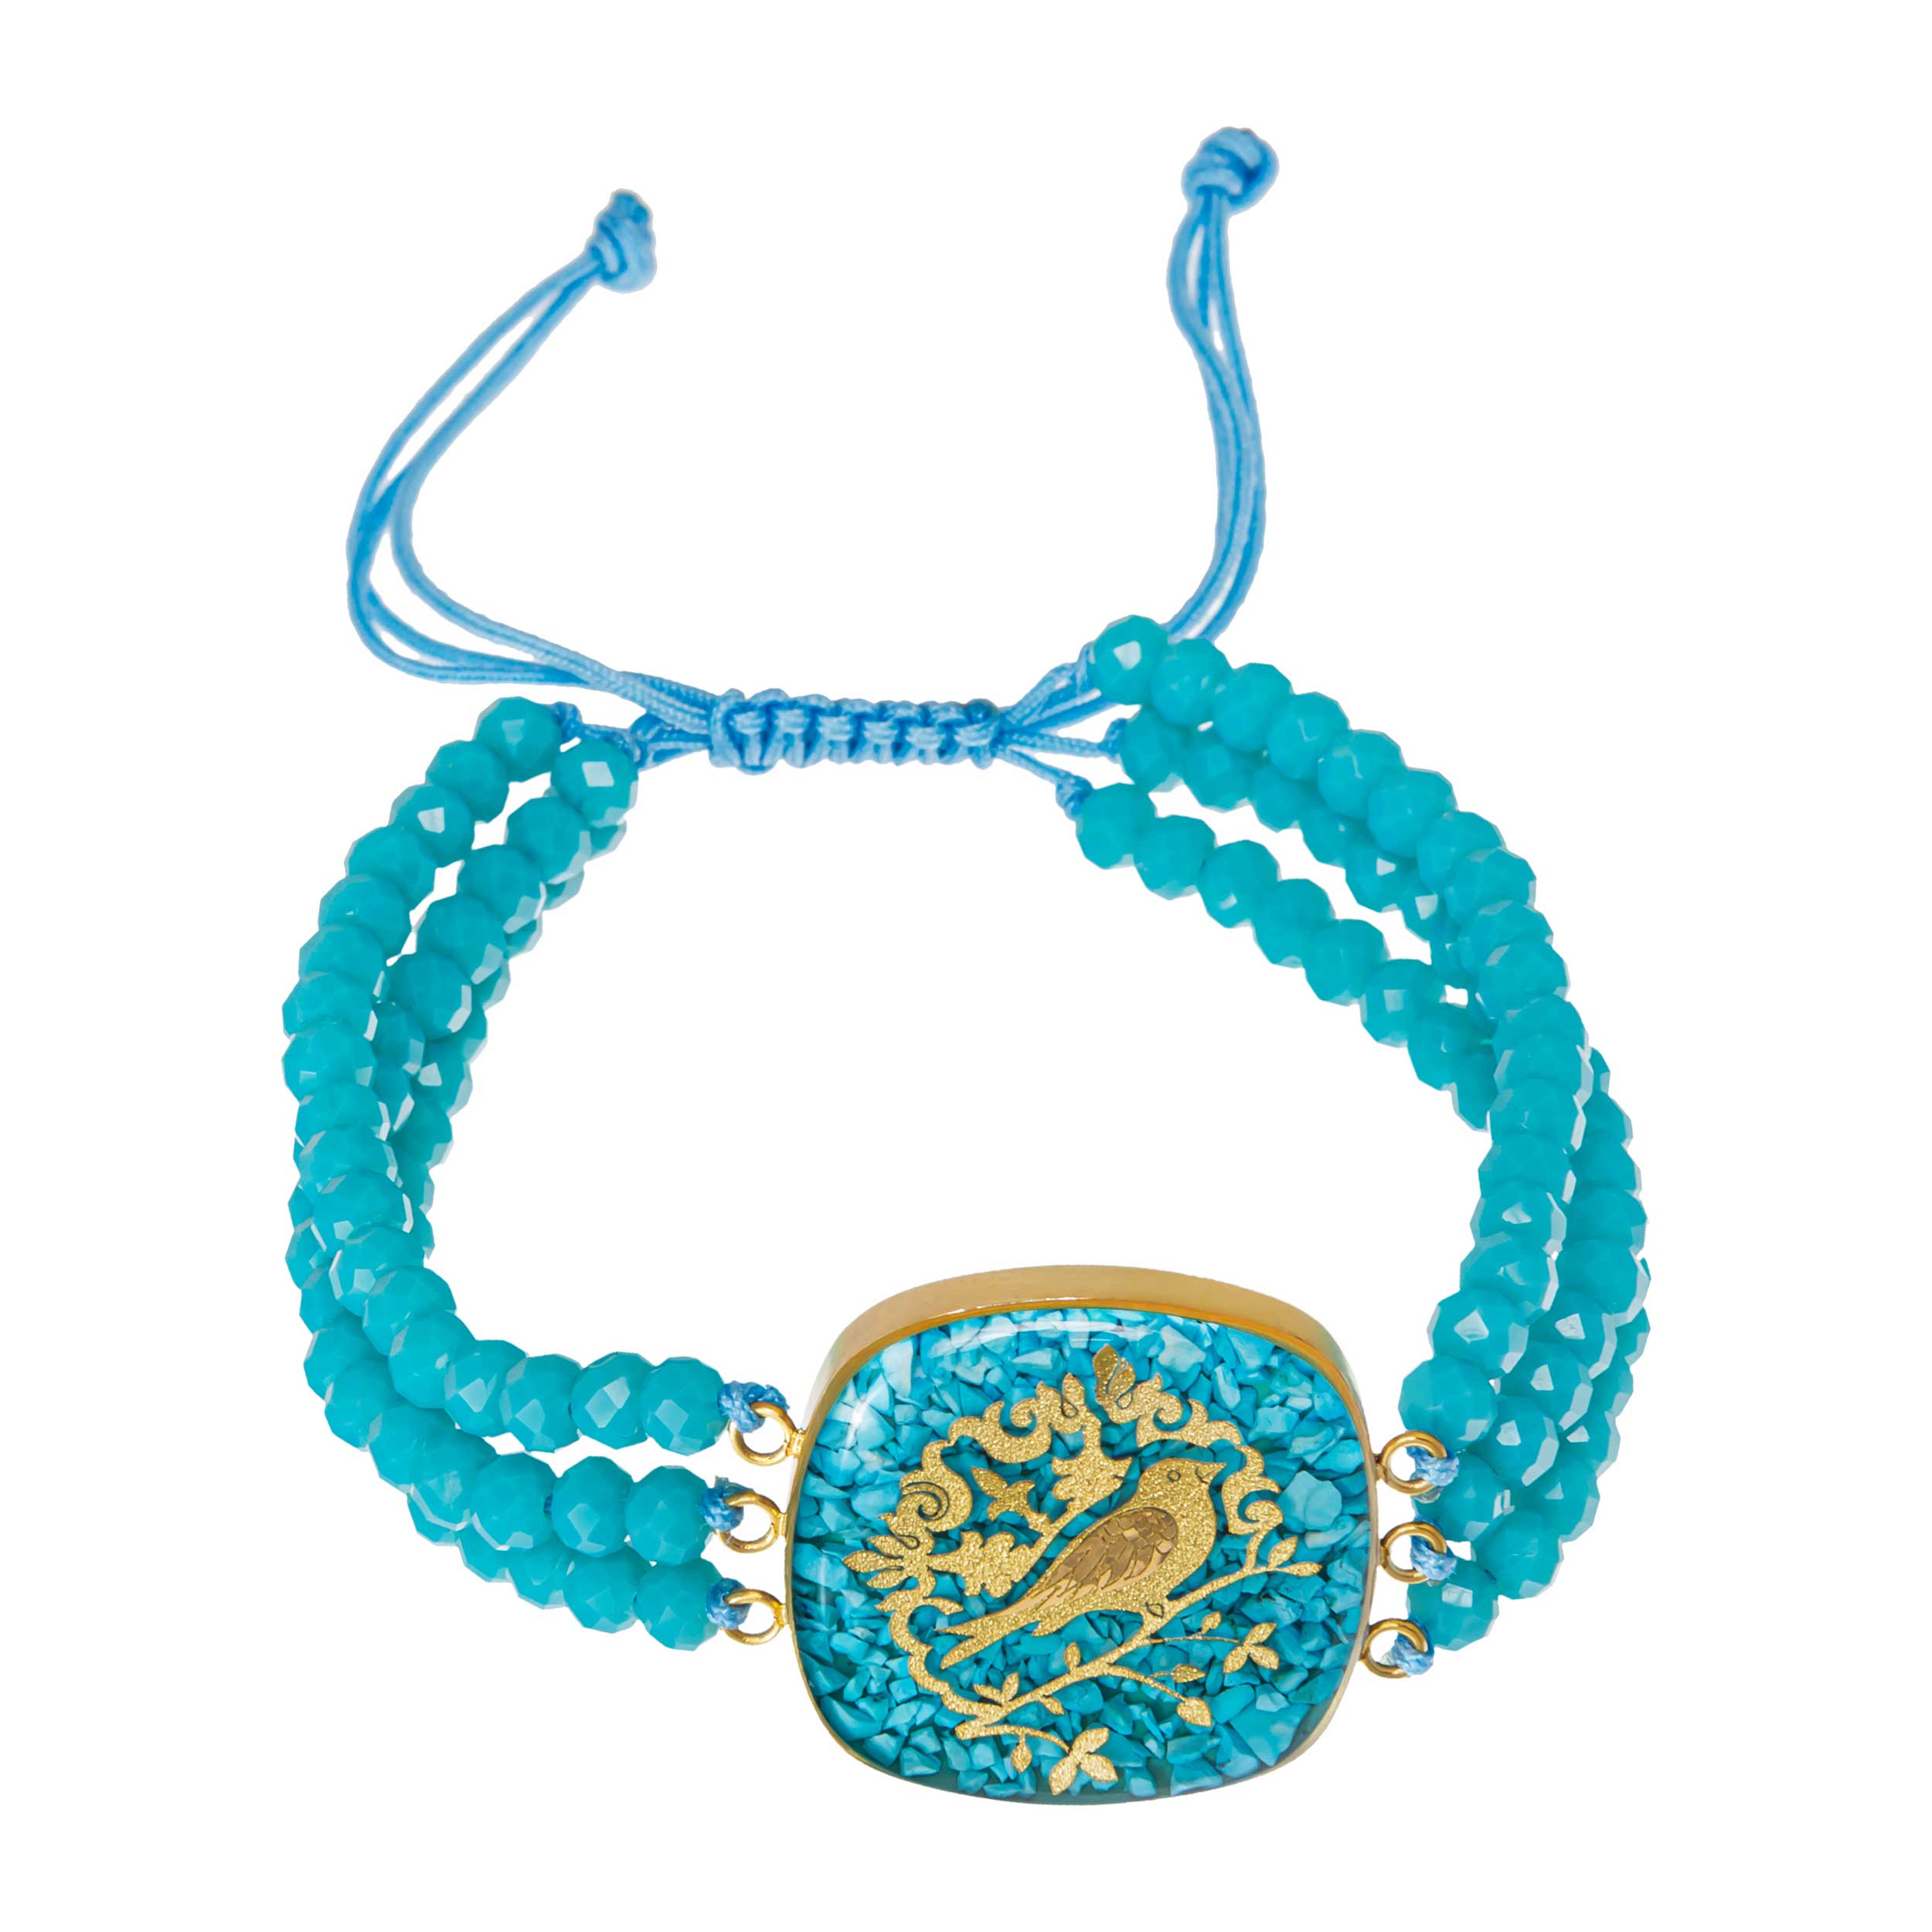 Turquoise bracelet and 24 carat gold leaf Sahar chicken design